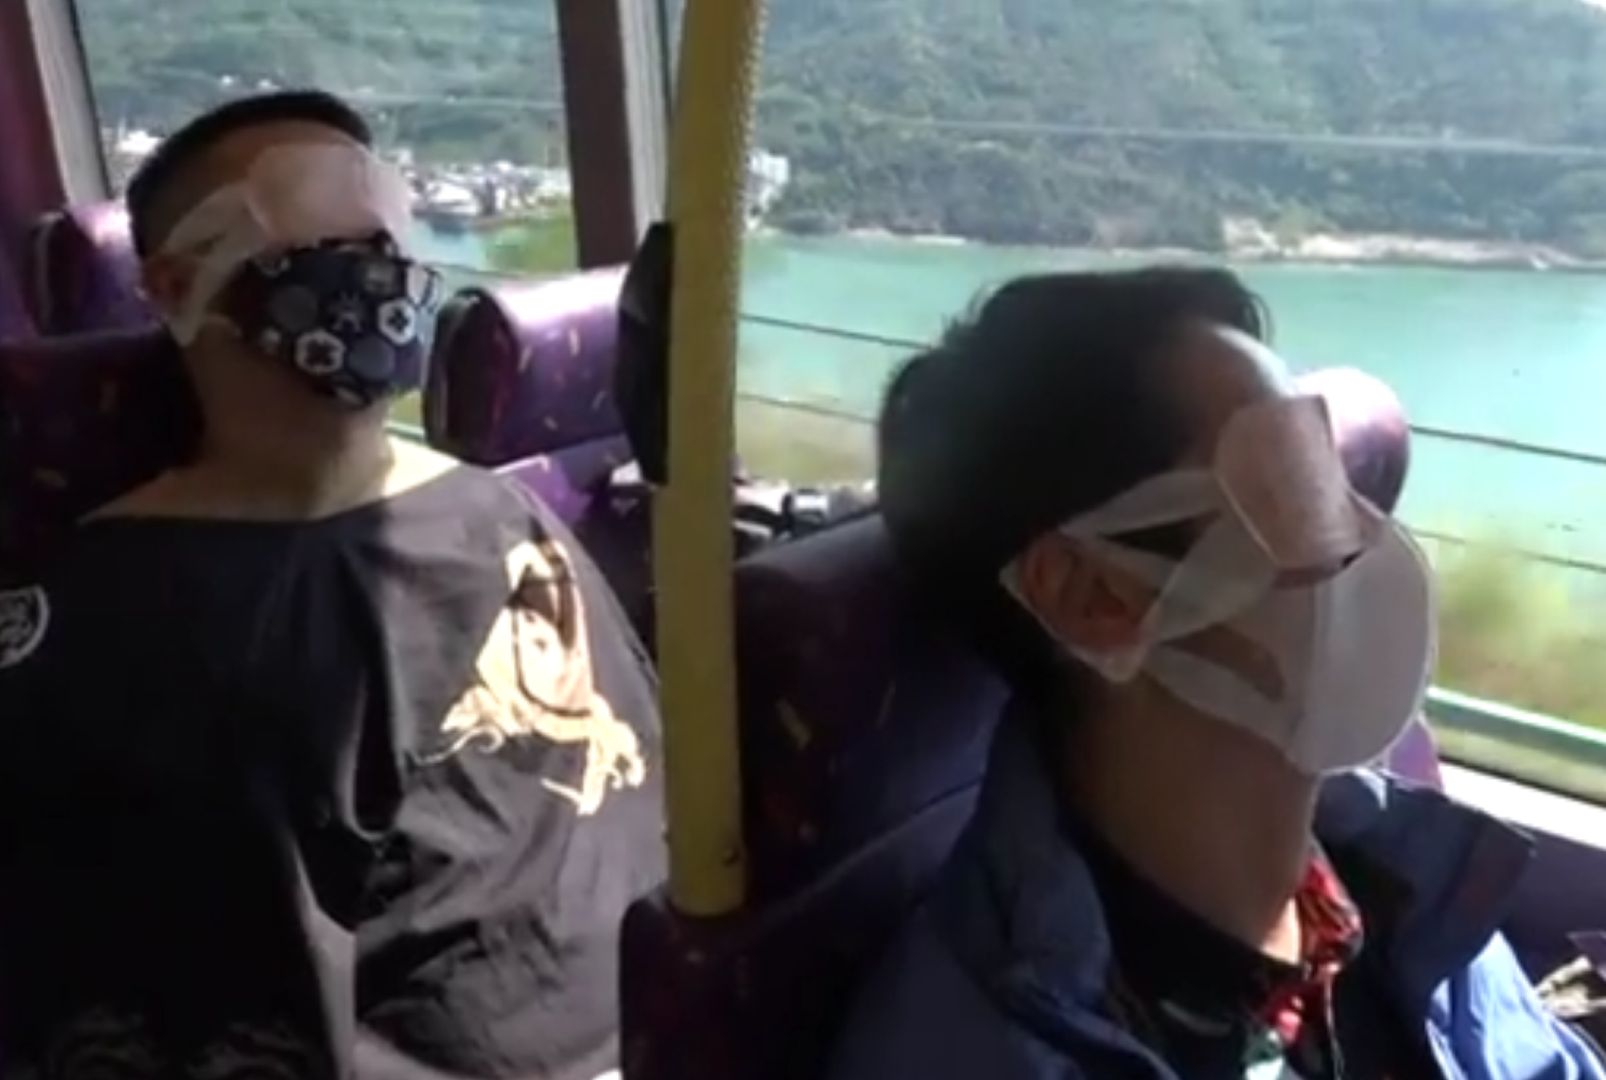 Podróż dla niewyspanych. Biuro podróży w Hongkongu wymyśliło niezły biznes